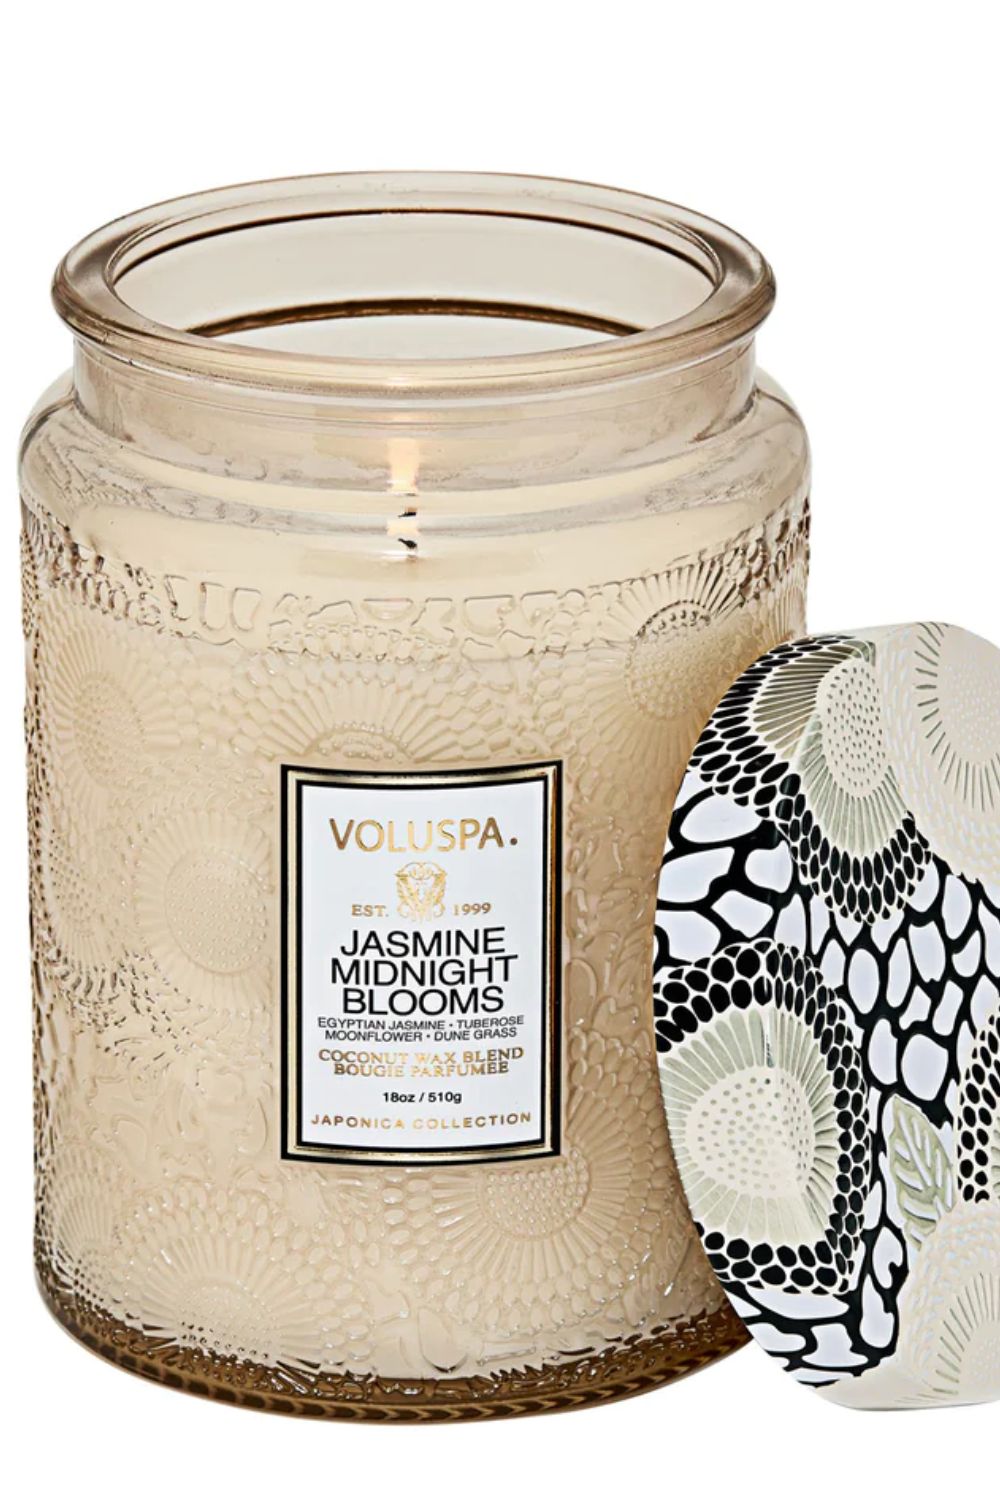 VOLUSPA jasmine midnight blooms 100HR candle